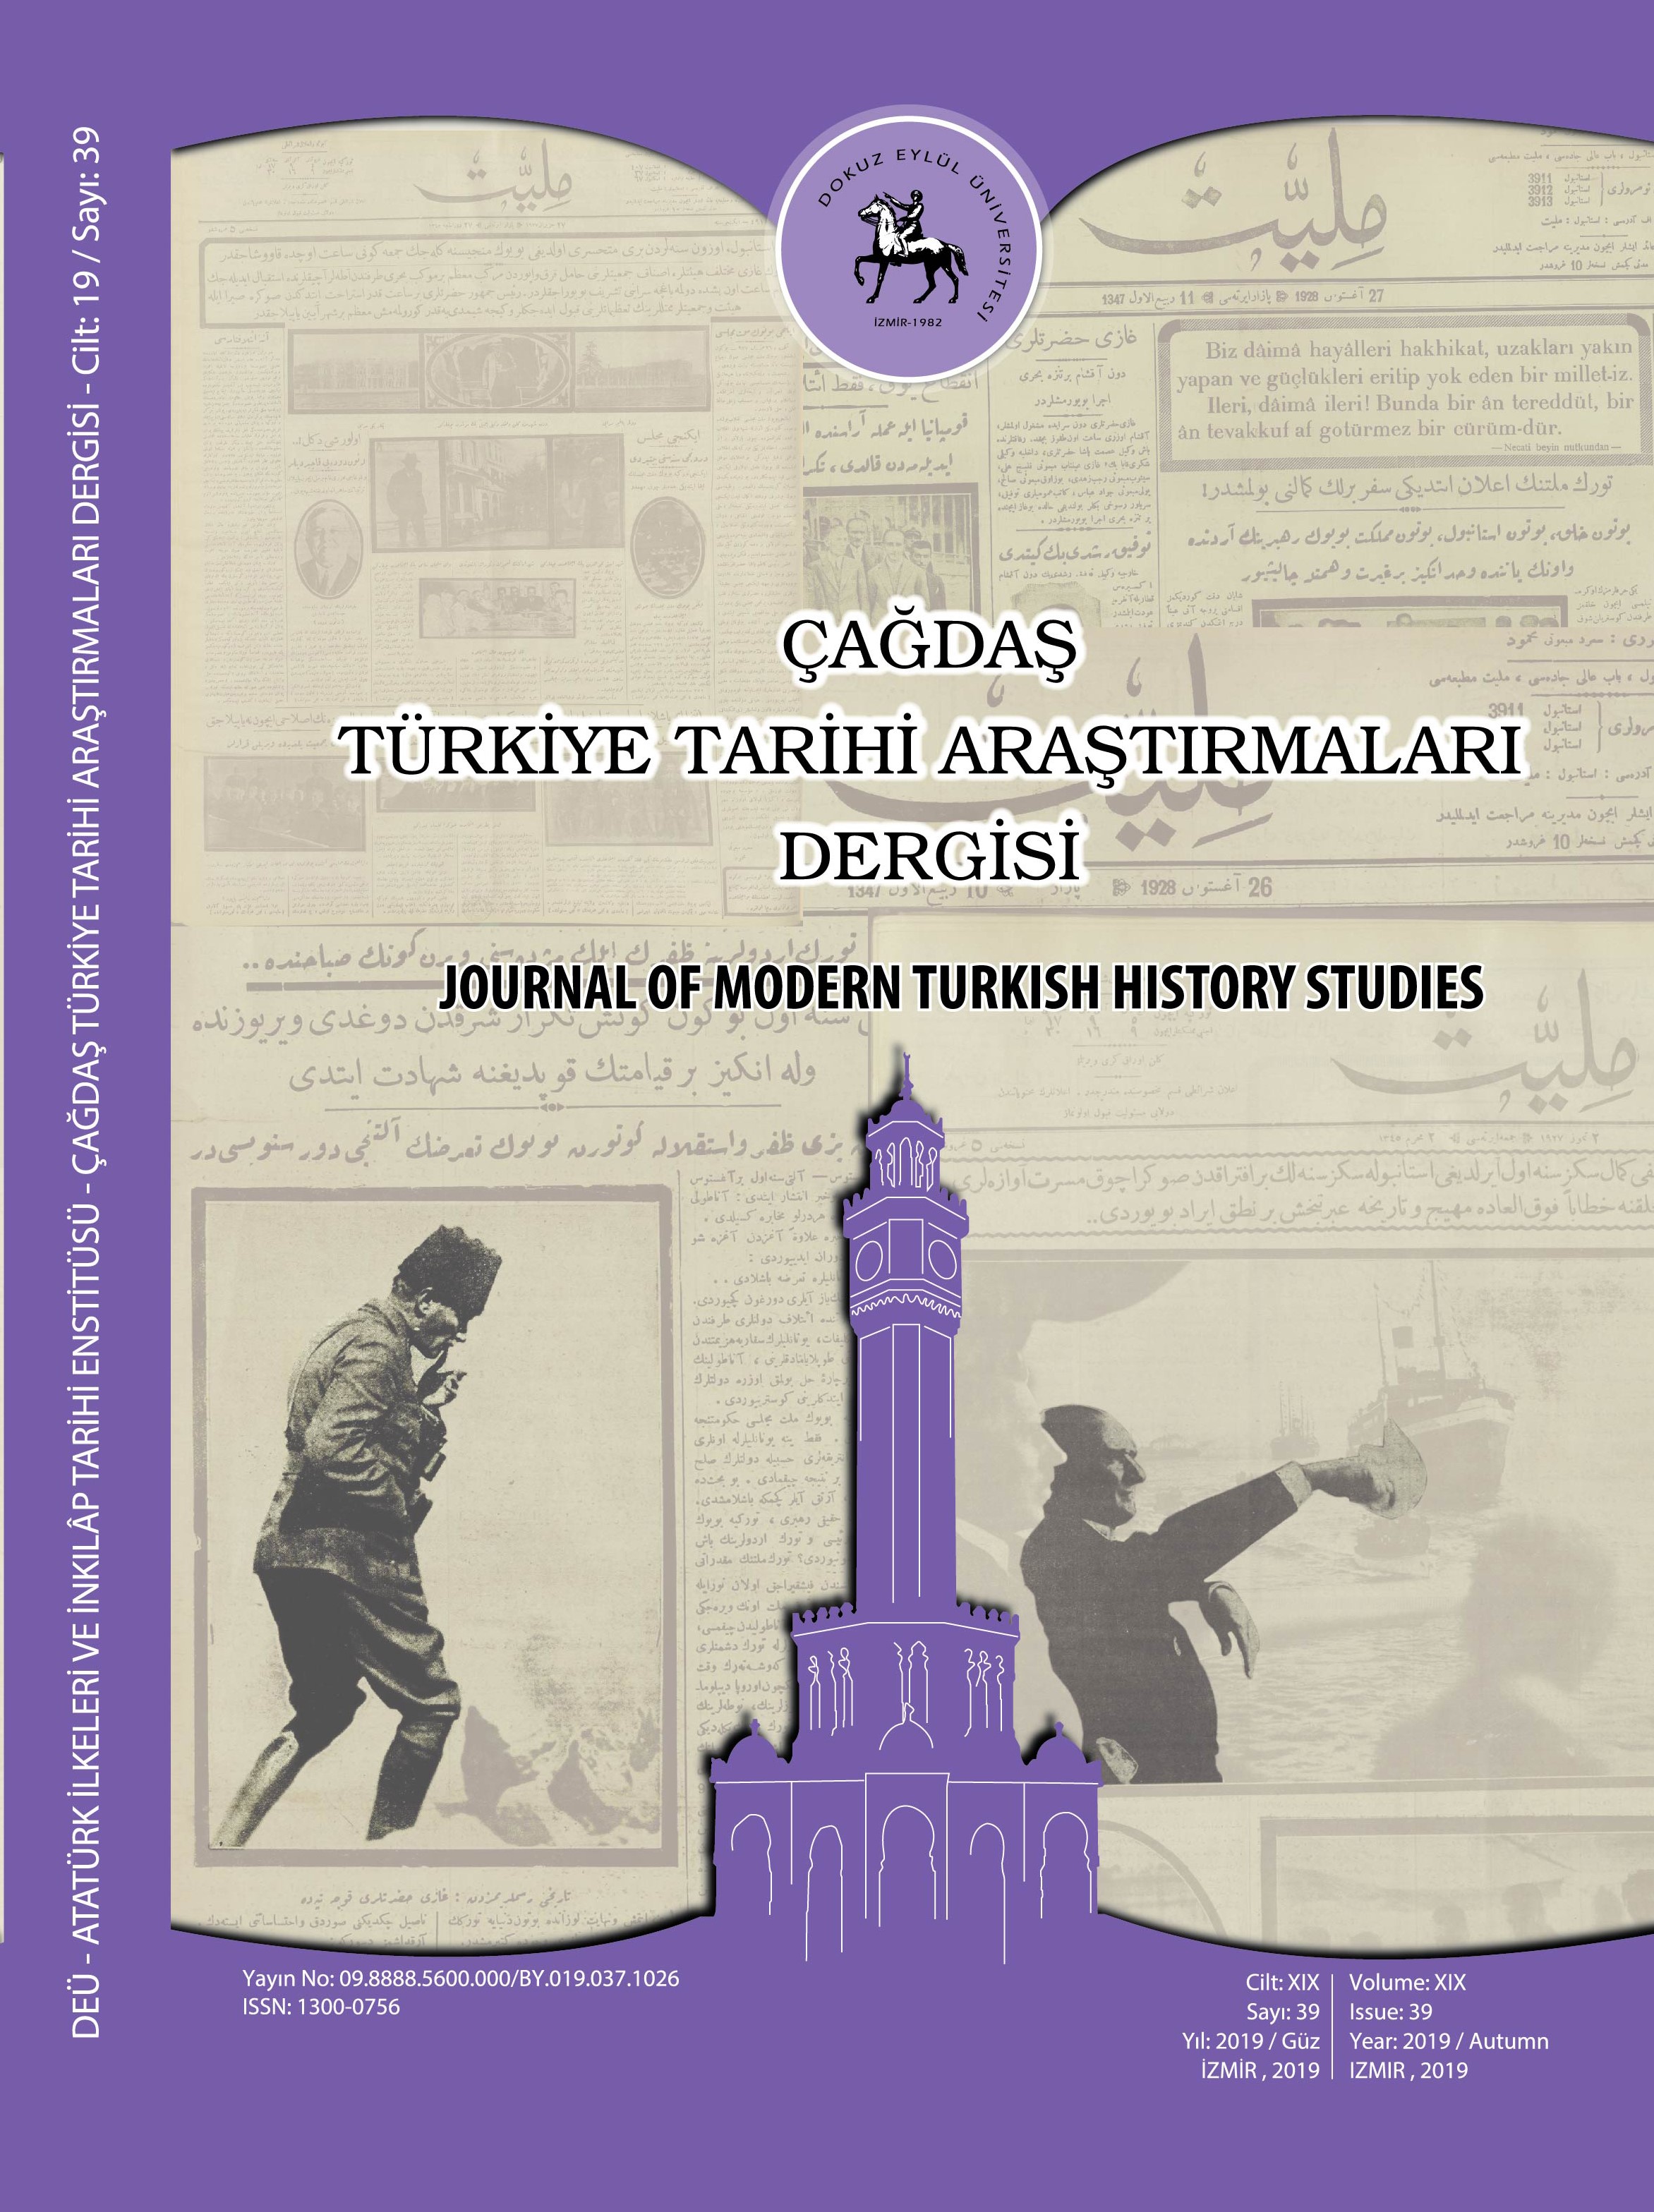 Çağdaş Türkiye Tarihi Araştırmaları Dergimizin 39. Sayısı (2019/ Güz) Yayınlandı.